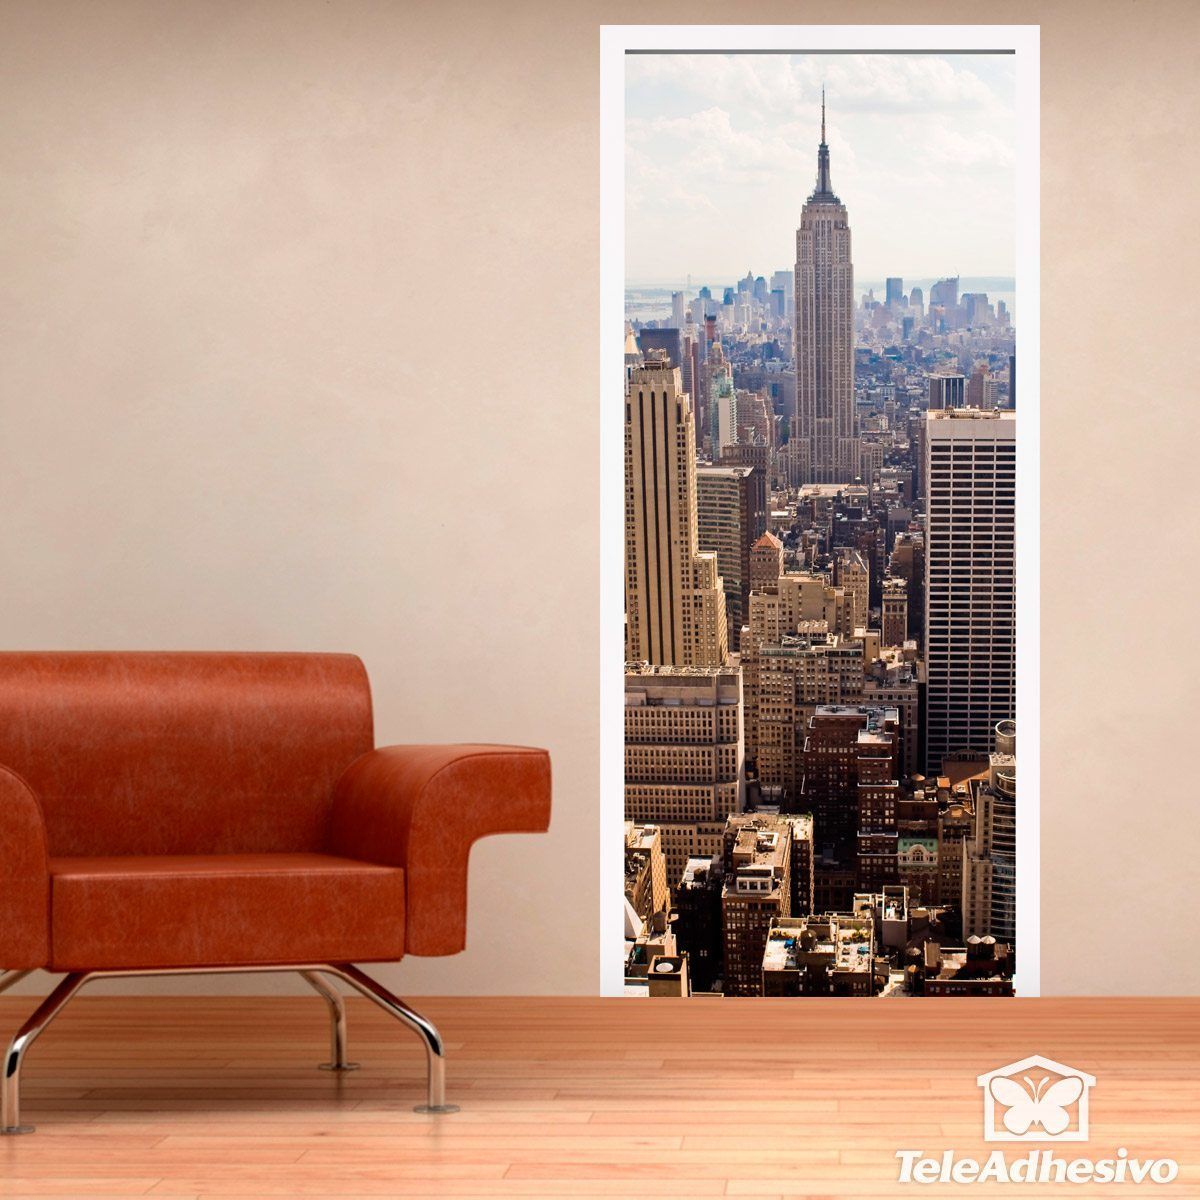 Adesivi Murali: Vista sull'Empire State Building